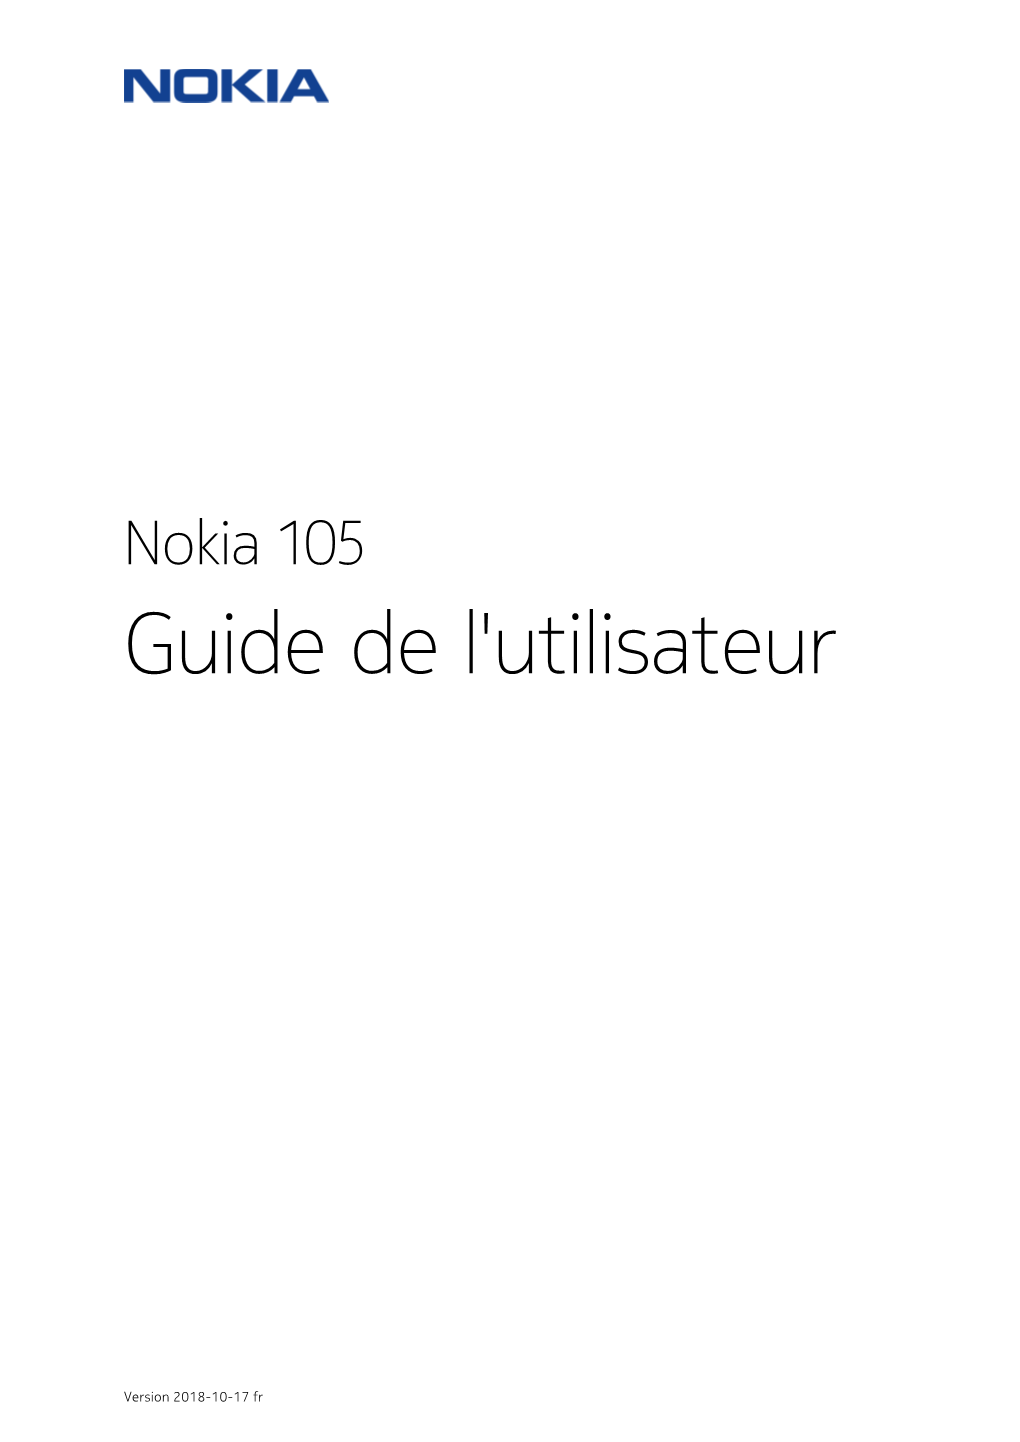 Nokia 105 Guide De L'utilisateur